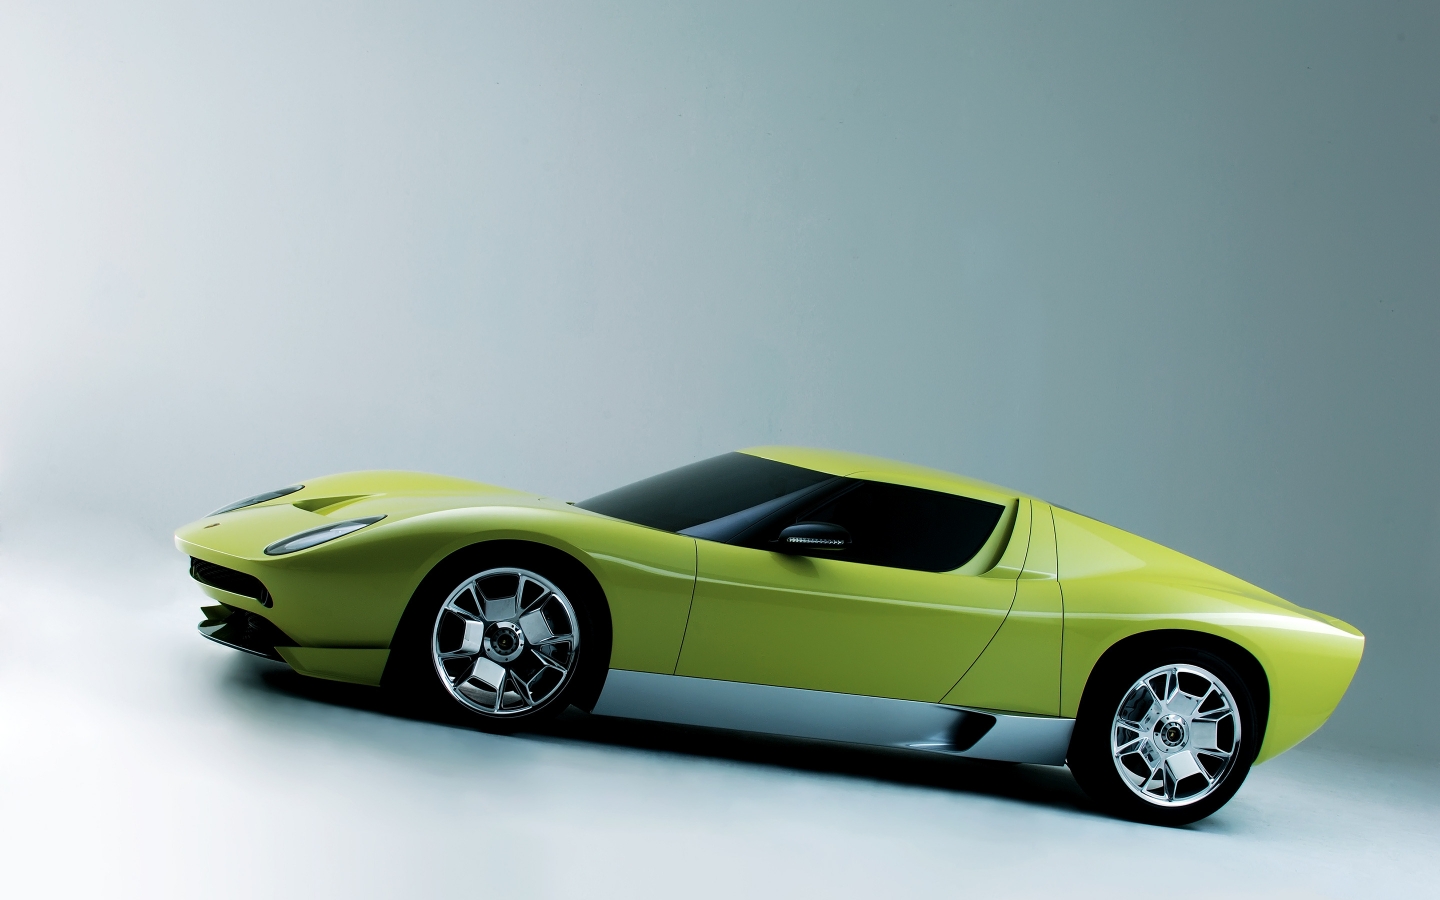 Lamborghini Miura Concept Side for 1440 x 900 widescreen resolution